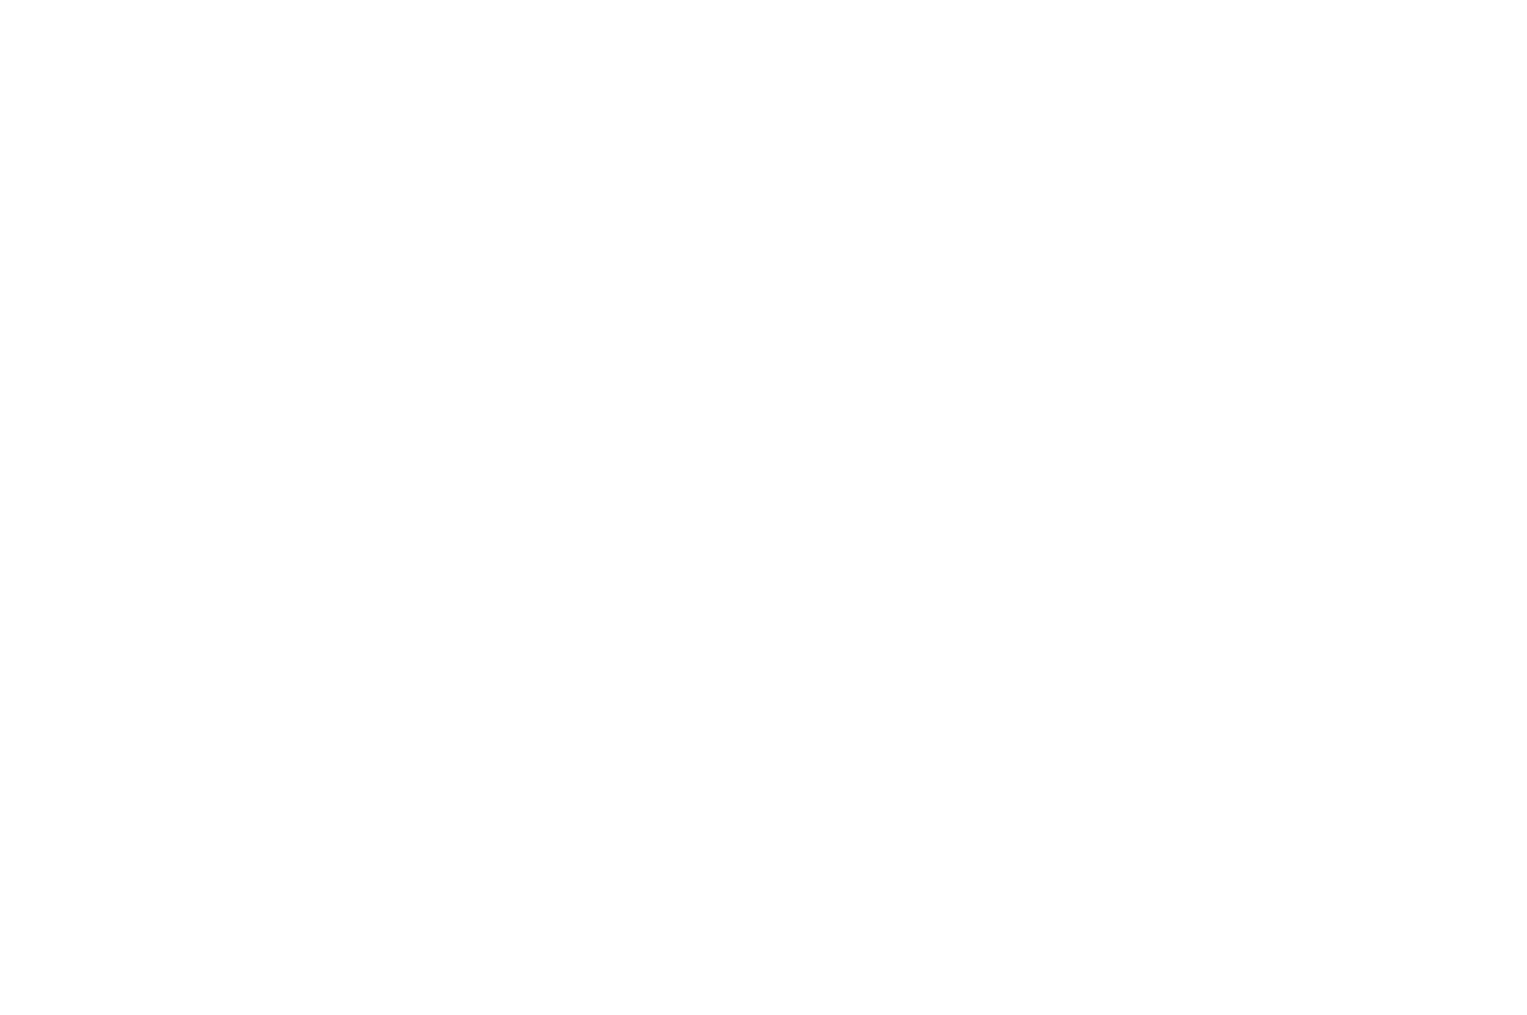 MOLINO Unique Family Destination, Old town of Nikiti Chalkidikis